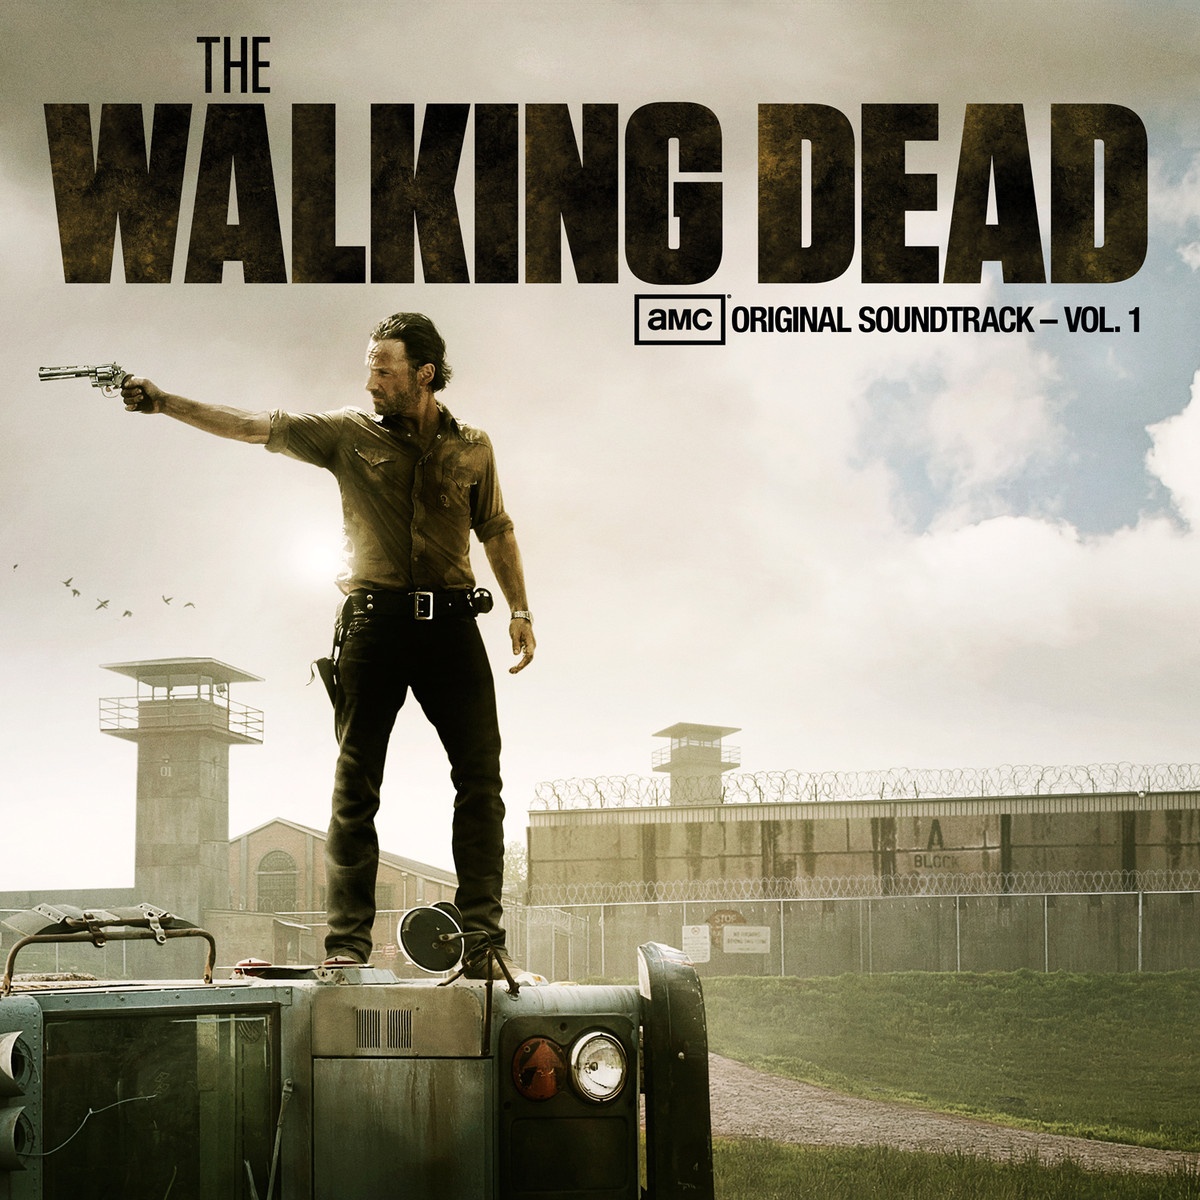 The Walking Dead: AMC Original Soundtrack, Vol. 1